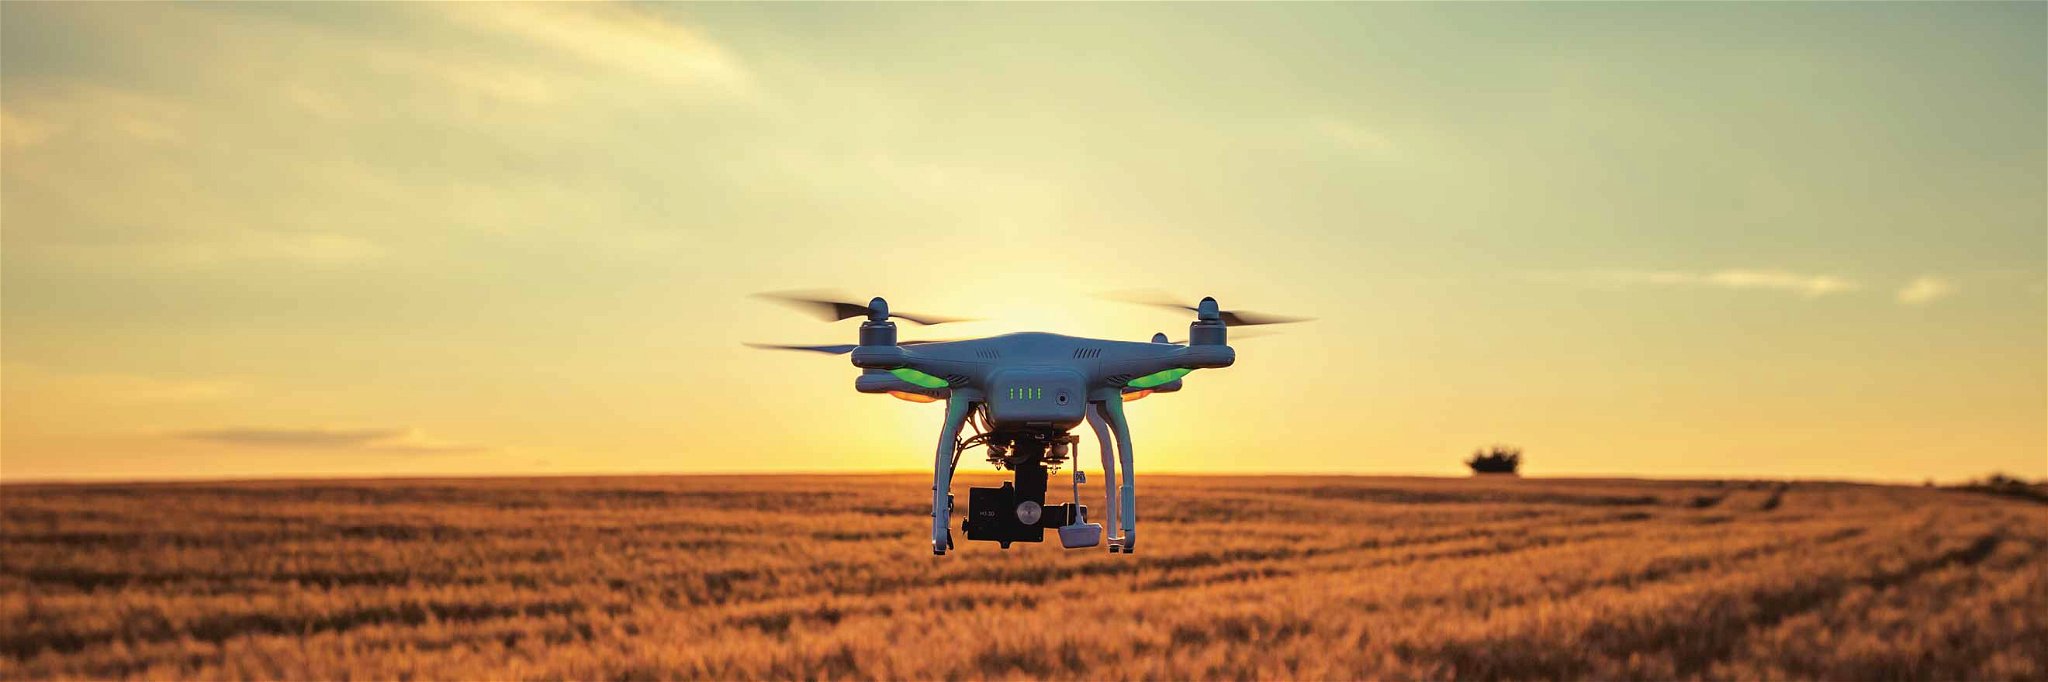 82 Prozent der Landwirte gehen davon aus, dass die Arbeit autonomer Maschinen die Zukunft ist.